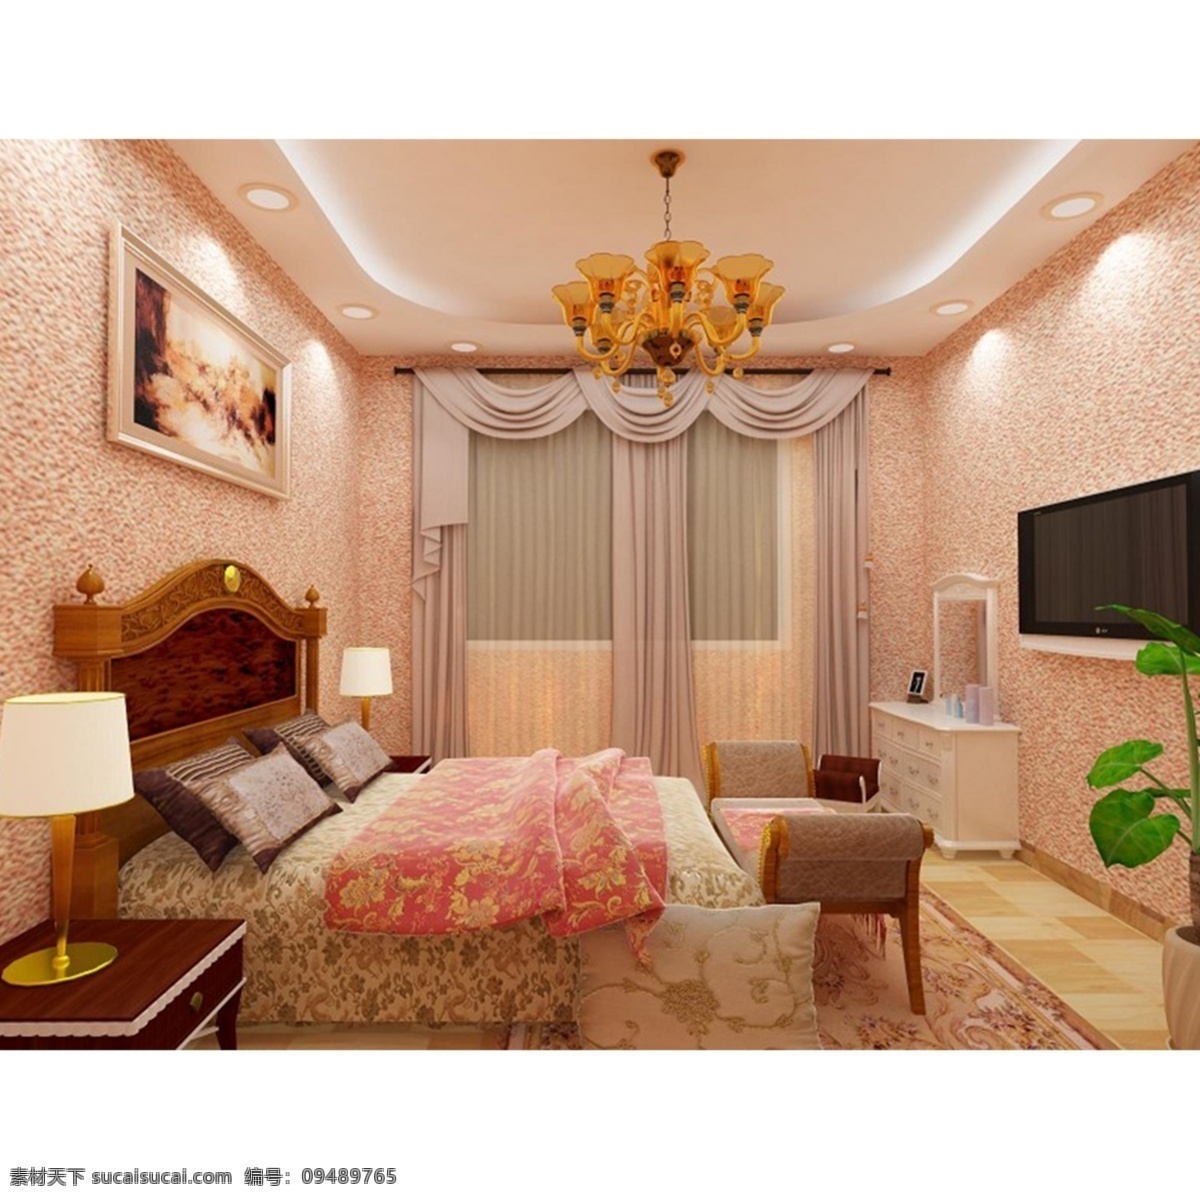 卧室效果图 3d室内 渲染卧室 温馨小窝 儿童房 主卧 次卧 婚房 房子 3d设计 3d作品